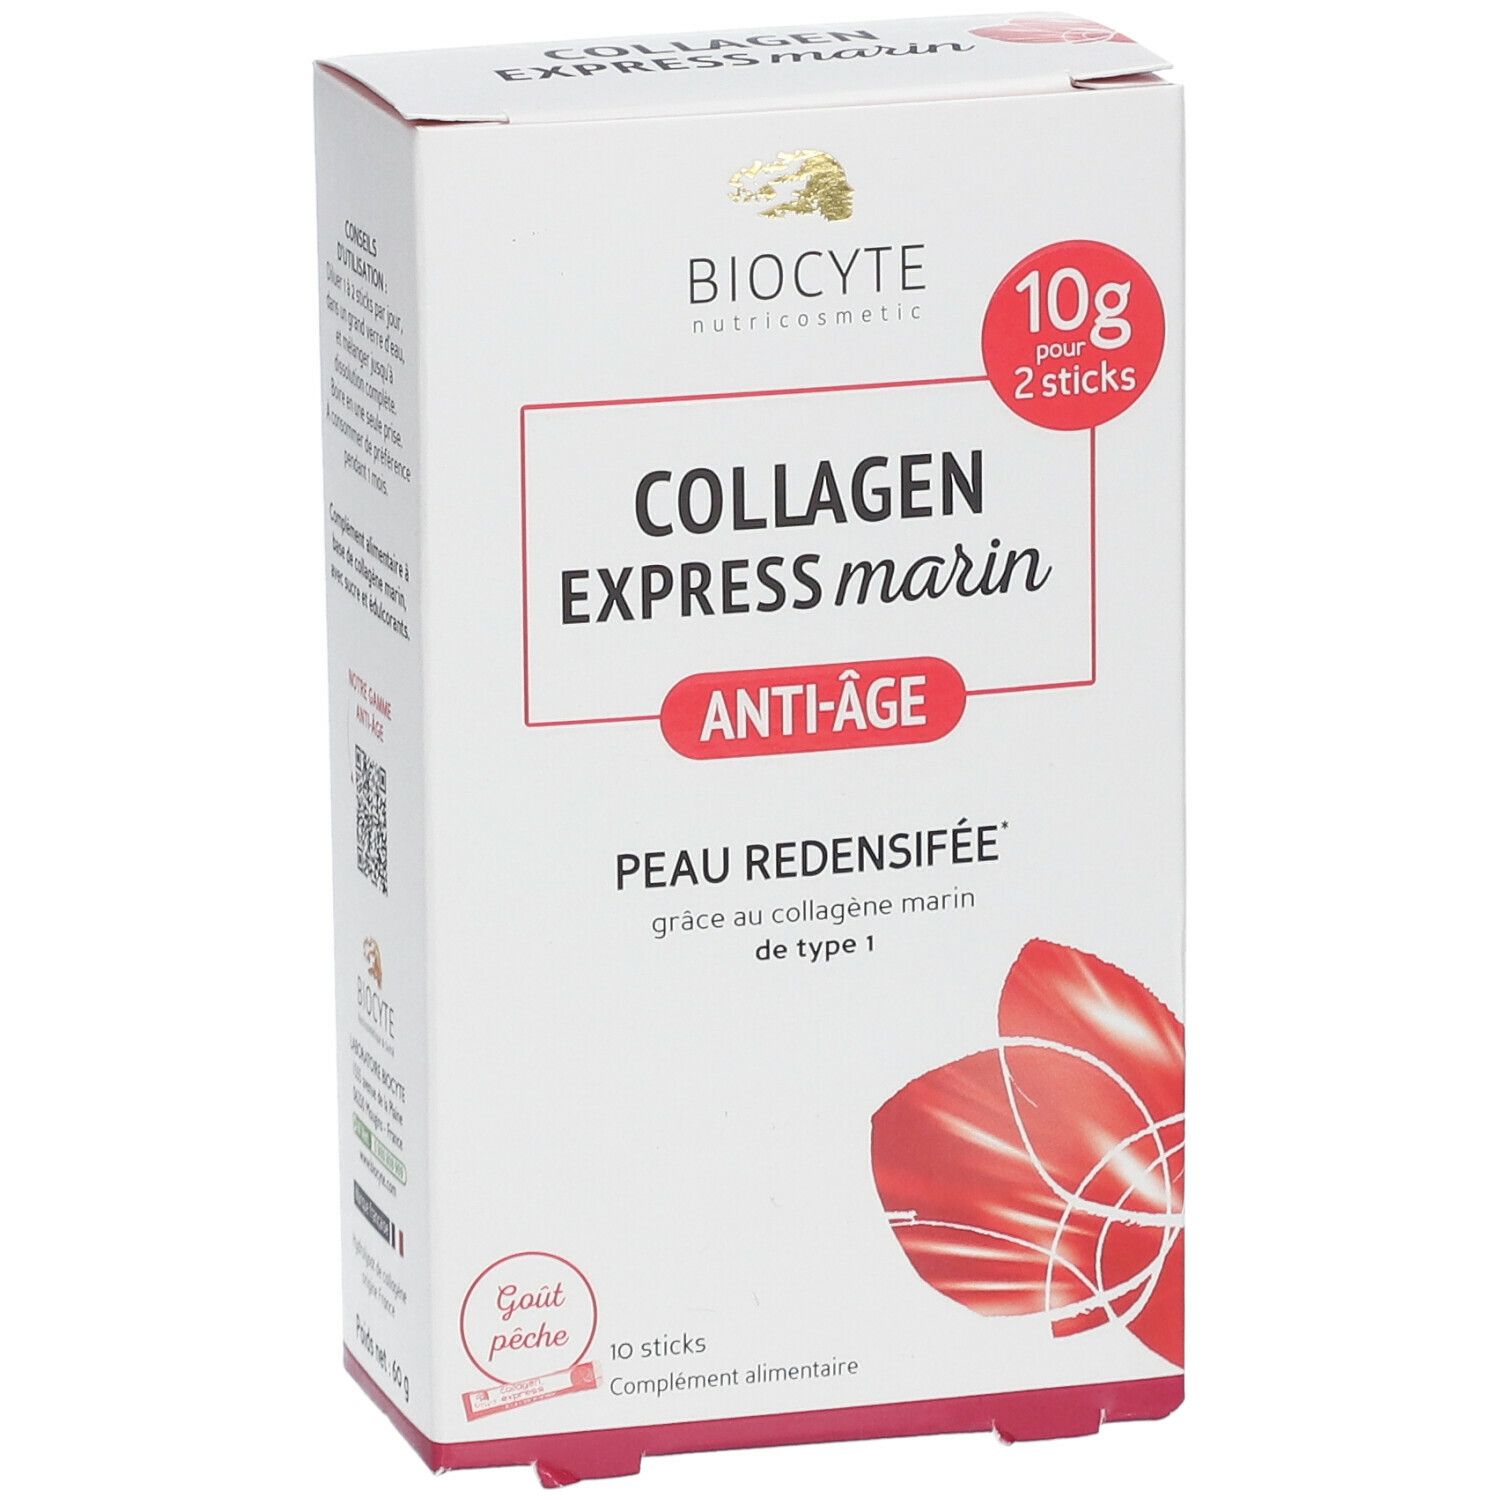 Biocyte® Collagen Express Anti-Age Sticks